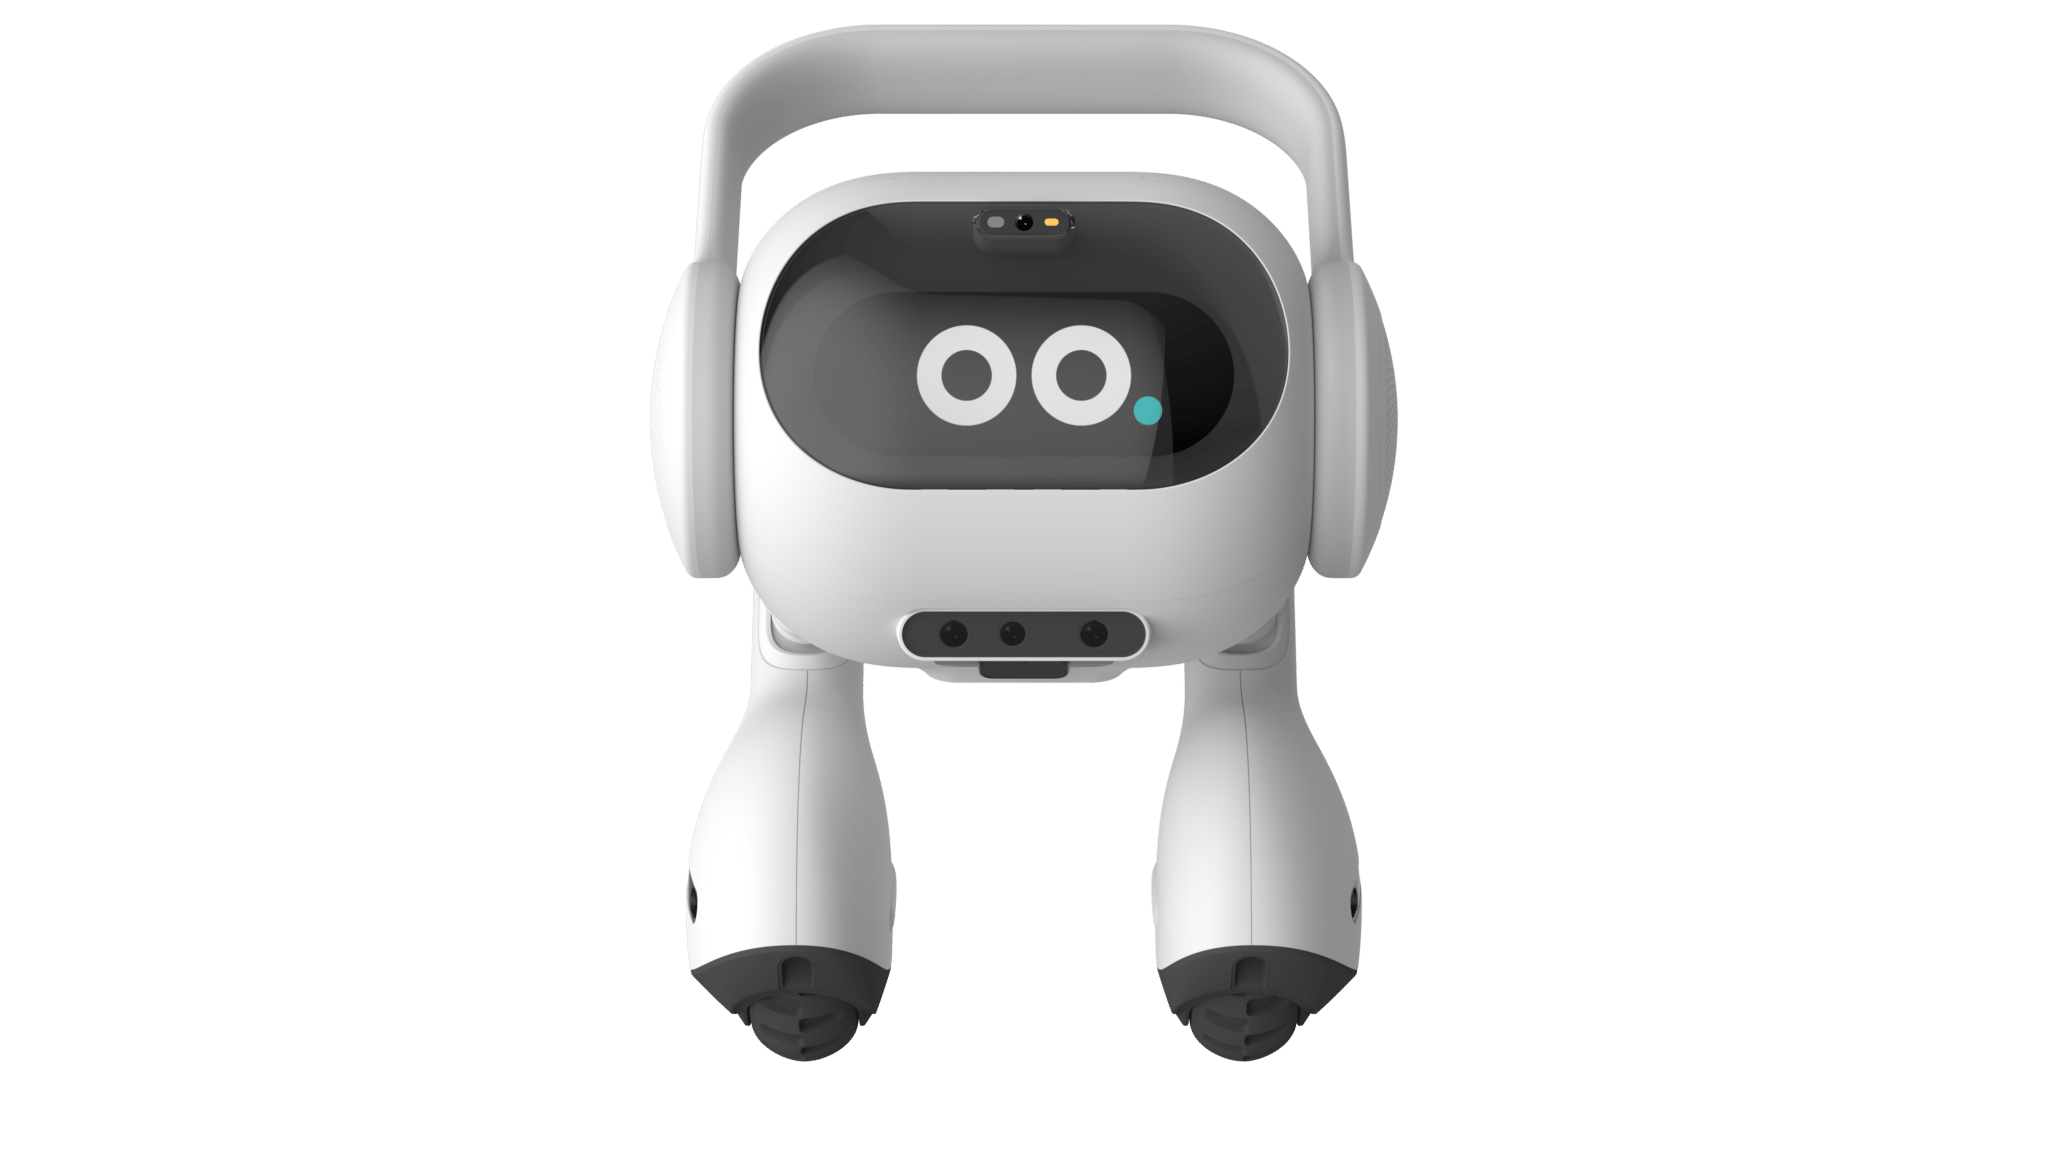 إل جي تطور روبوتًا منزليًا مزودًا بالذكاء الاصطناعي